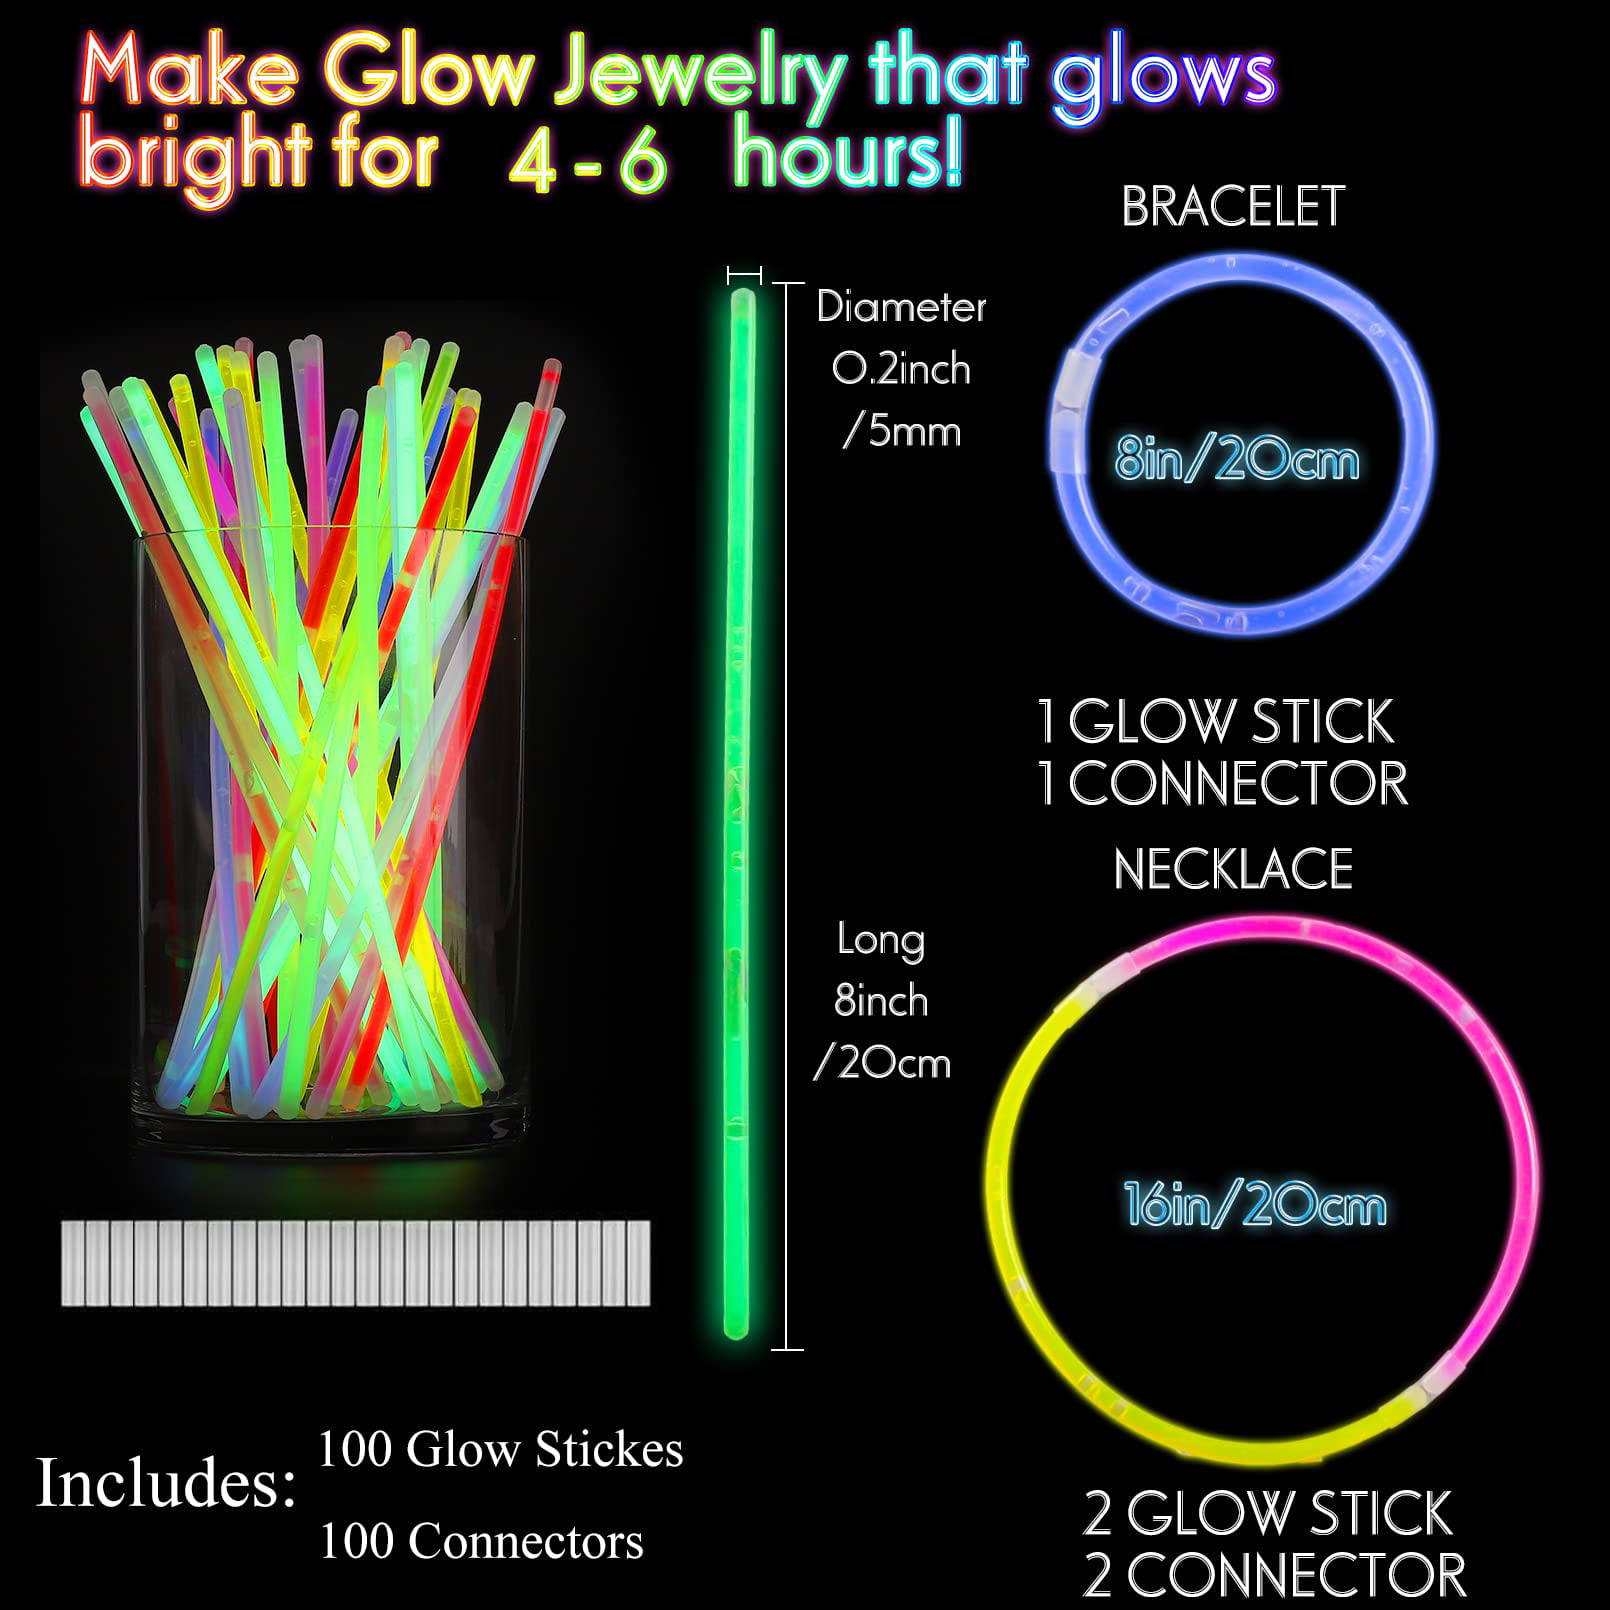  Glow Sticks Bulk Party Favors: 150 PCS 8 Colors Glow